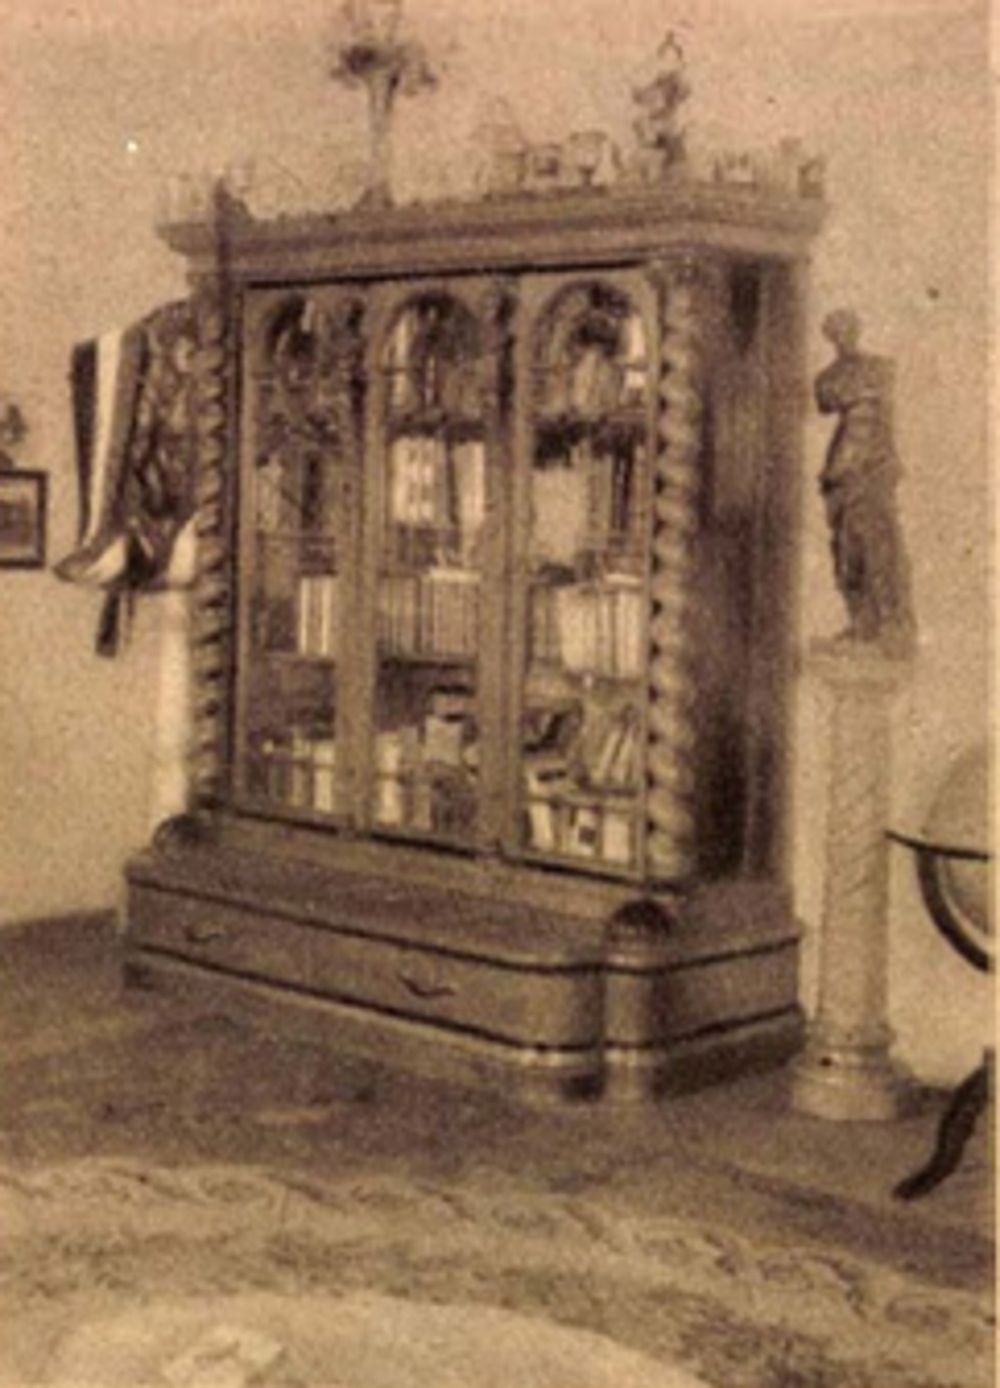 Jászai Mari szekrénye, mely Petőfi Sándort ábrázolja